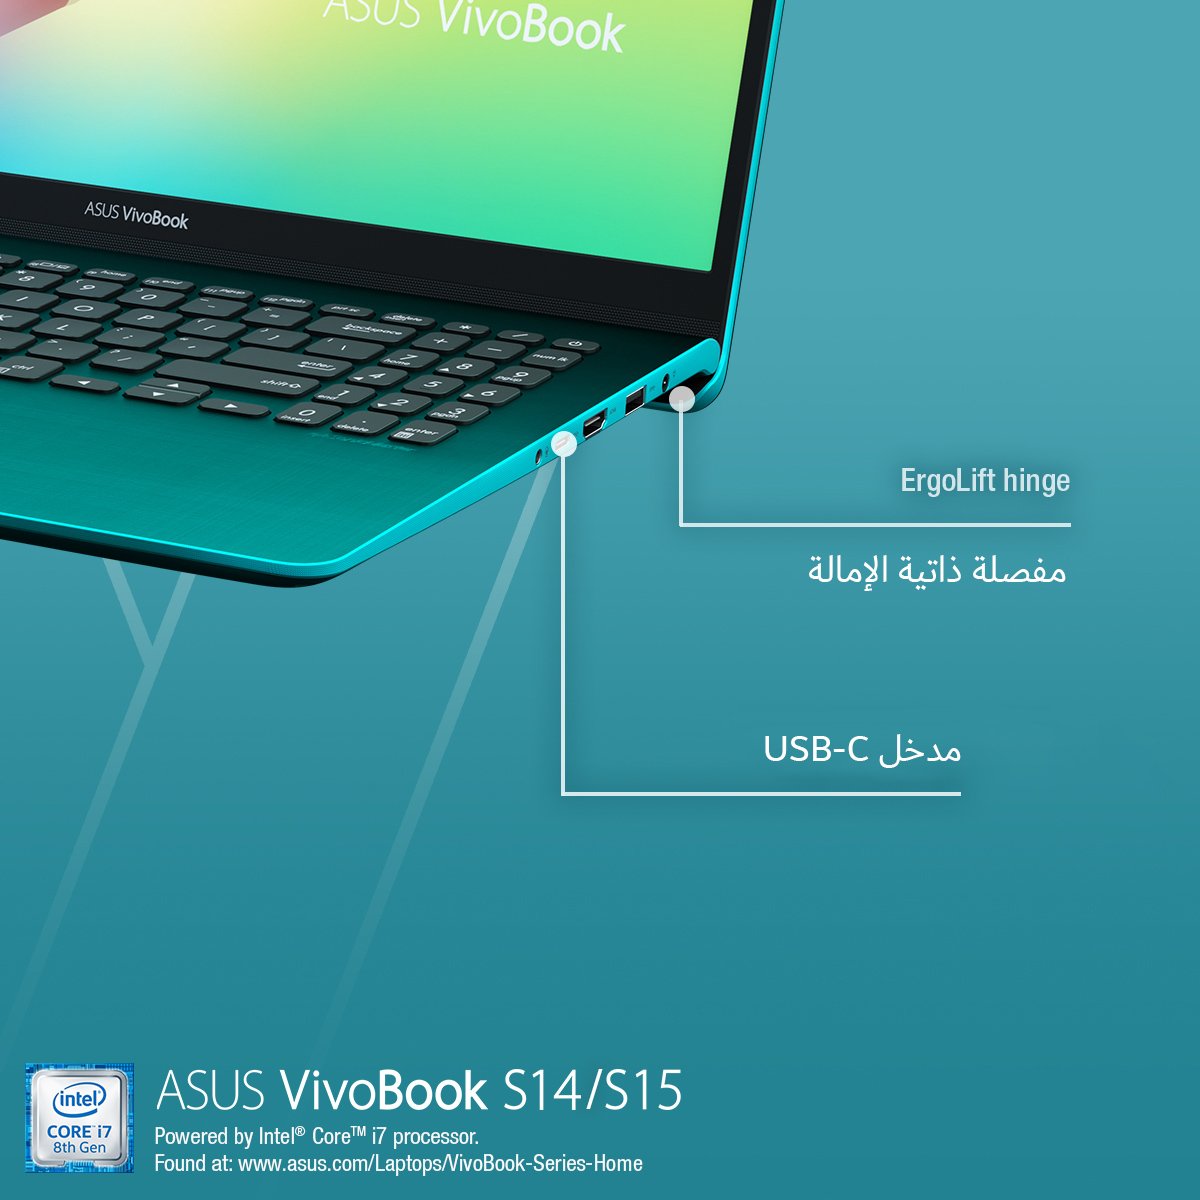 هل تبحث عن لابتوب قوي ، أنيق، خفيف، مدمج وسهل الحمل..
خليك على طبيعتك فيفوبوك اس يناسب اسلوبك الخاص تمامًا
اغتنم العرض:
S430: bit.ly/2VSn054
S530: bit.ly/2K0XjwU

#ASUS #VivoBookS #S430 #S530 #VivoBook